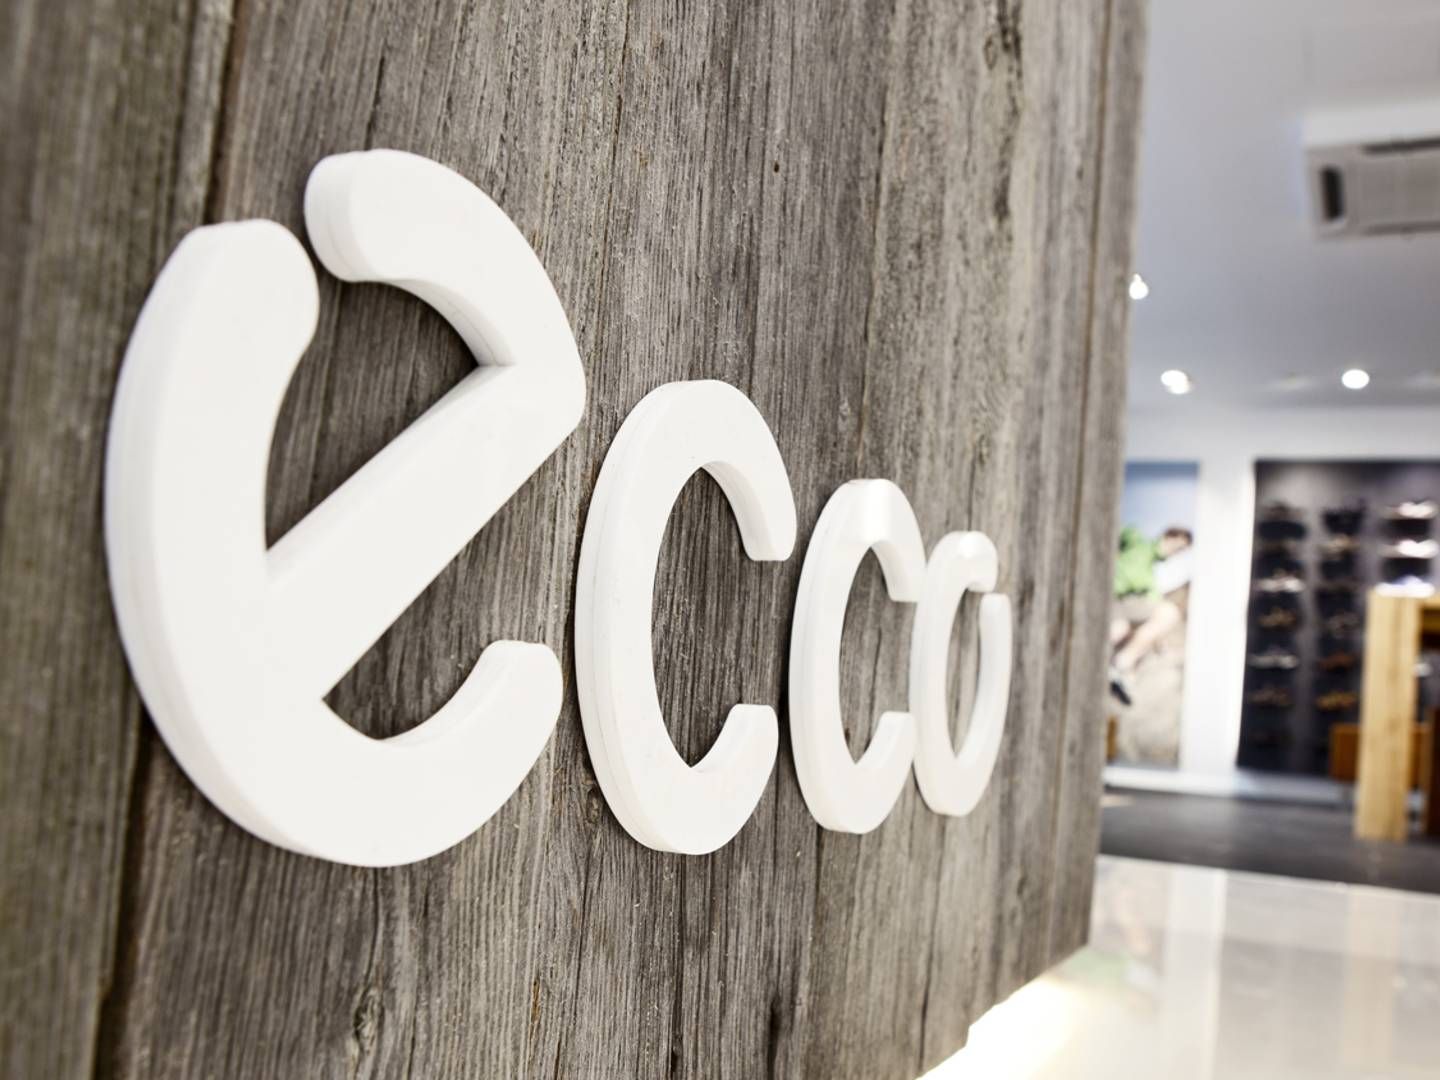 Ecco oplever i øjeblikket hård kritik fra blandt andet forhandlere, der mener, at skokoncernen lukker øjnene for Ruslands blodige krig i Ukraine. | Foto: Ecco/Pr